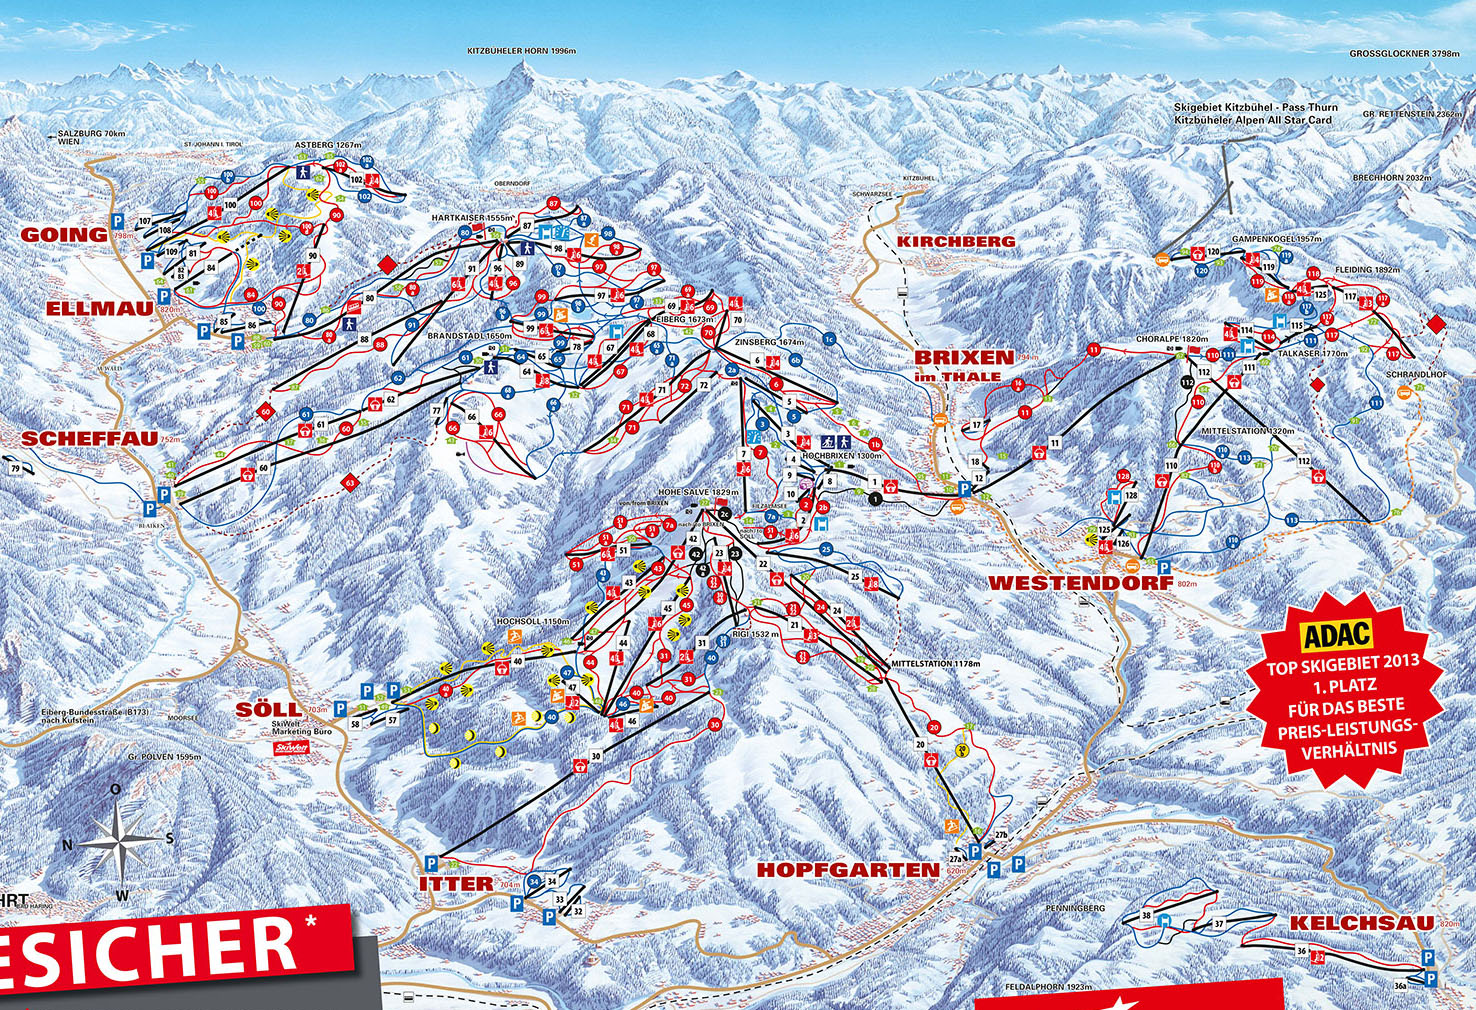 Pistenplan Skiwelt im Skigebiet Westendorf - ein Skigebiet in Tirol